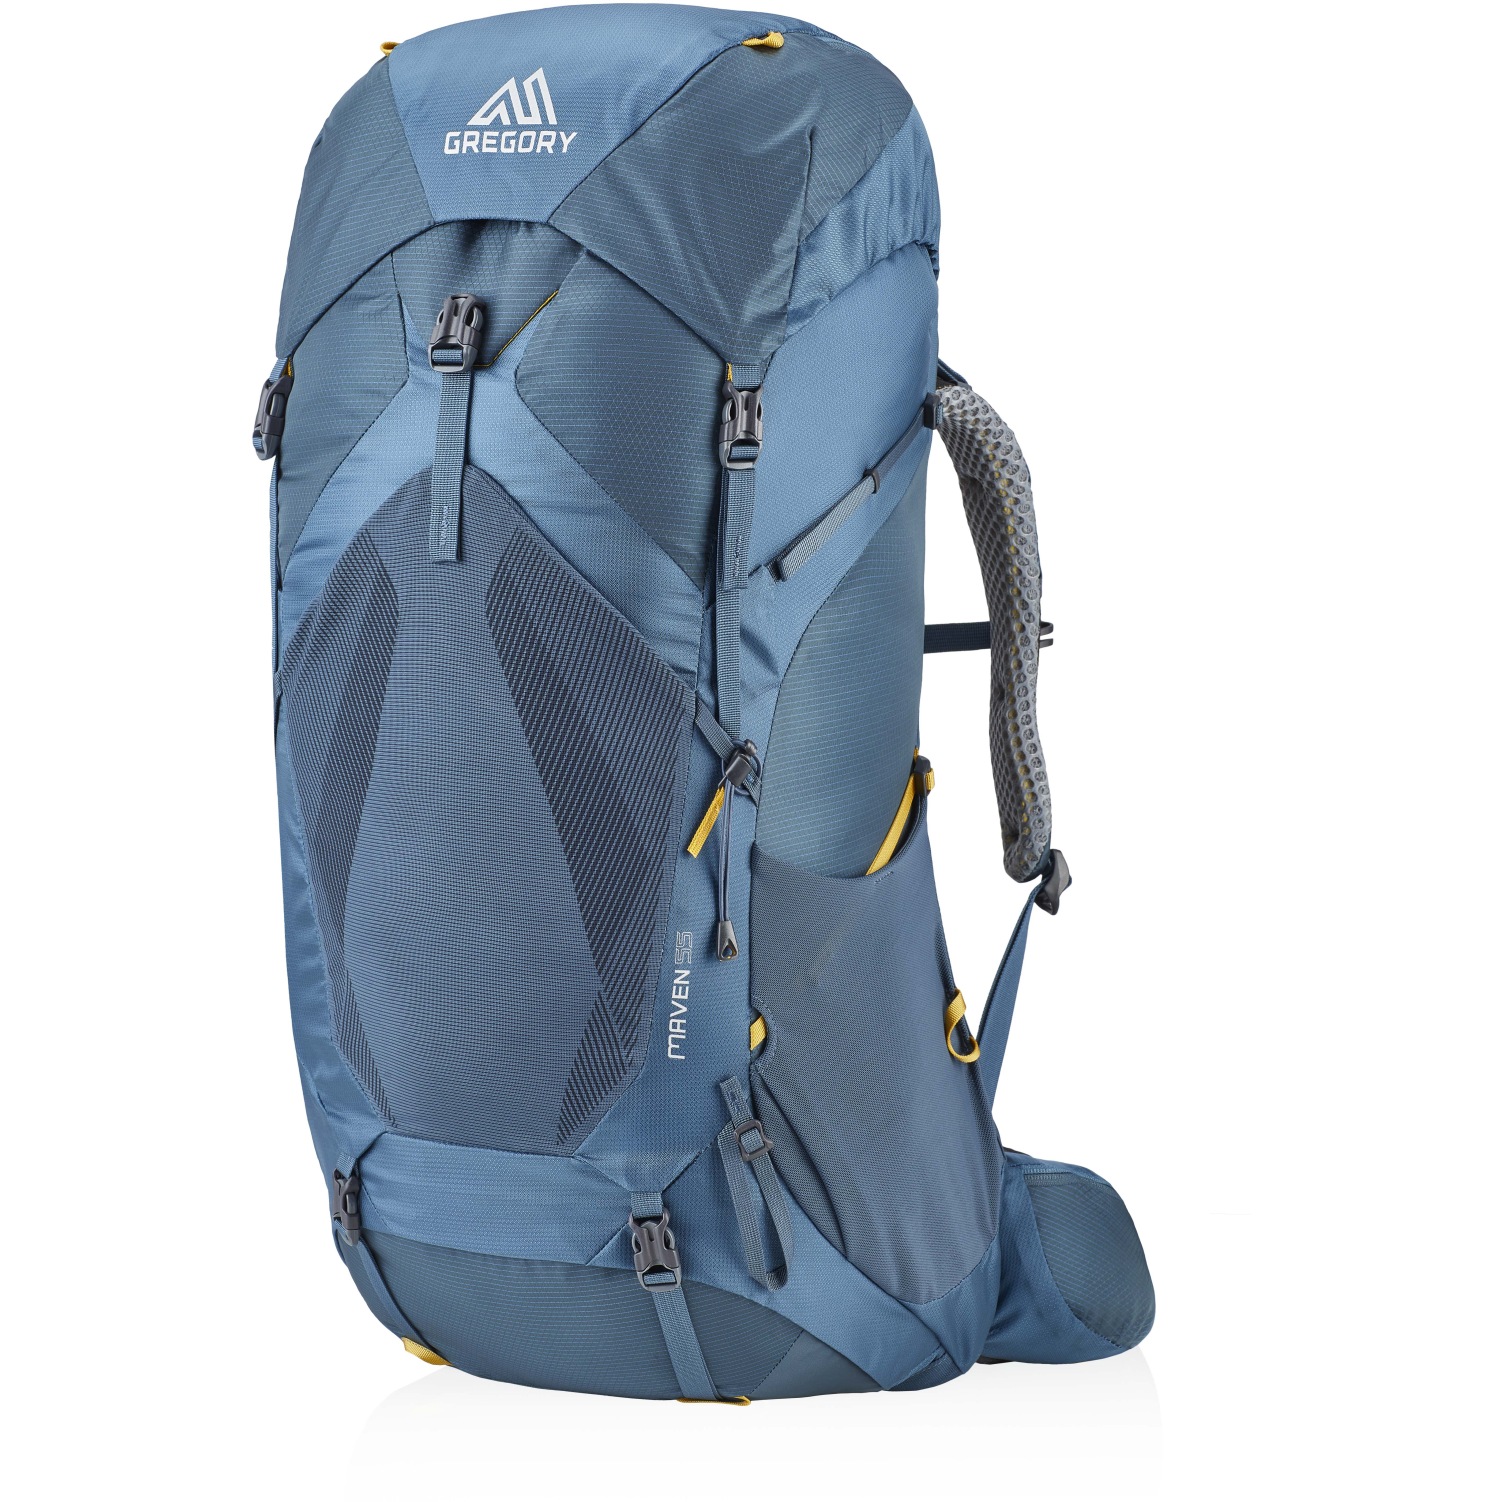 Image of Gregory Maven 55 Women's Trekking Backpack - Spectrum Blue